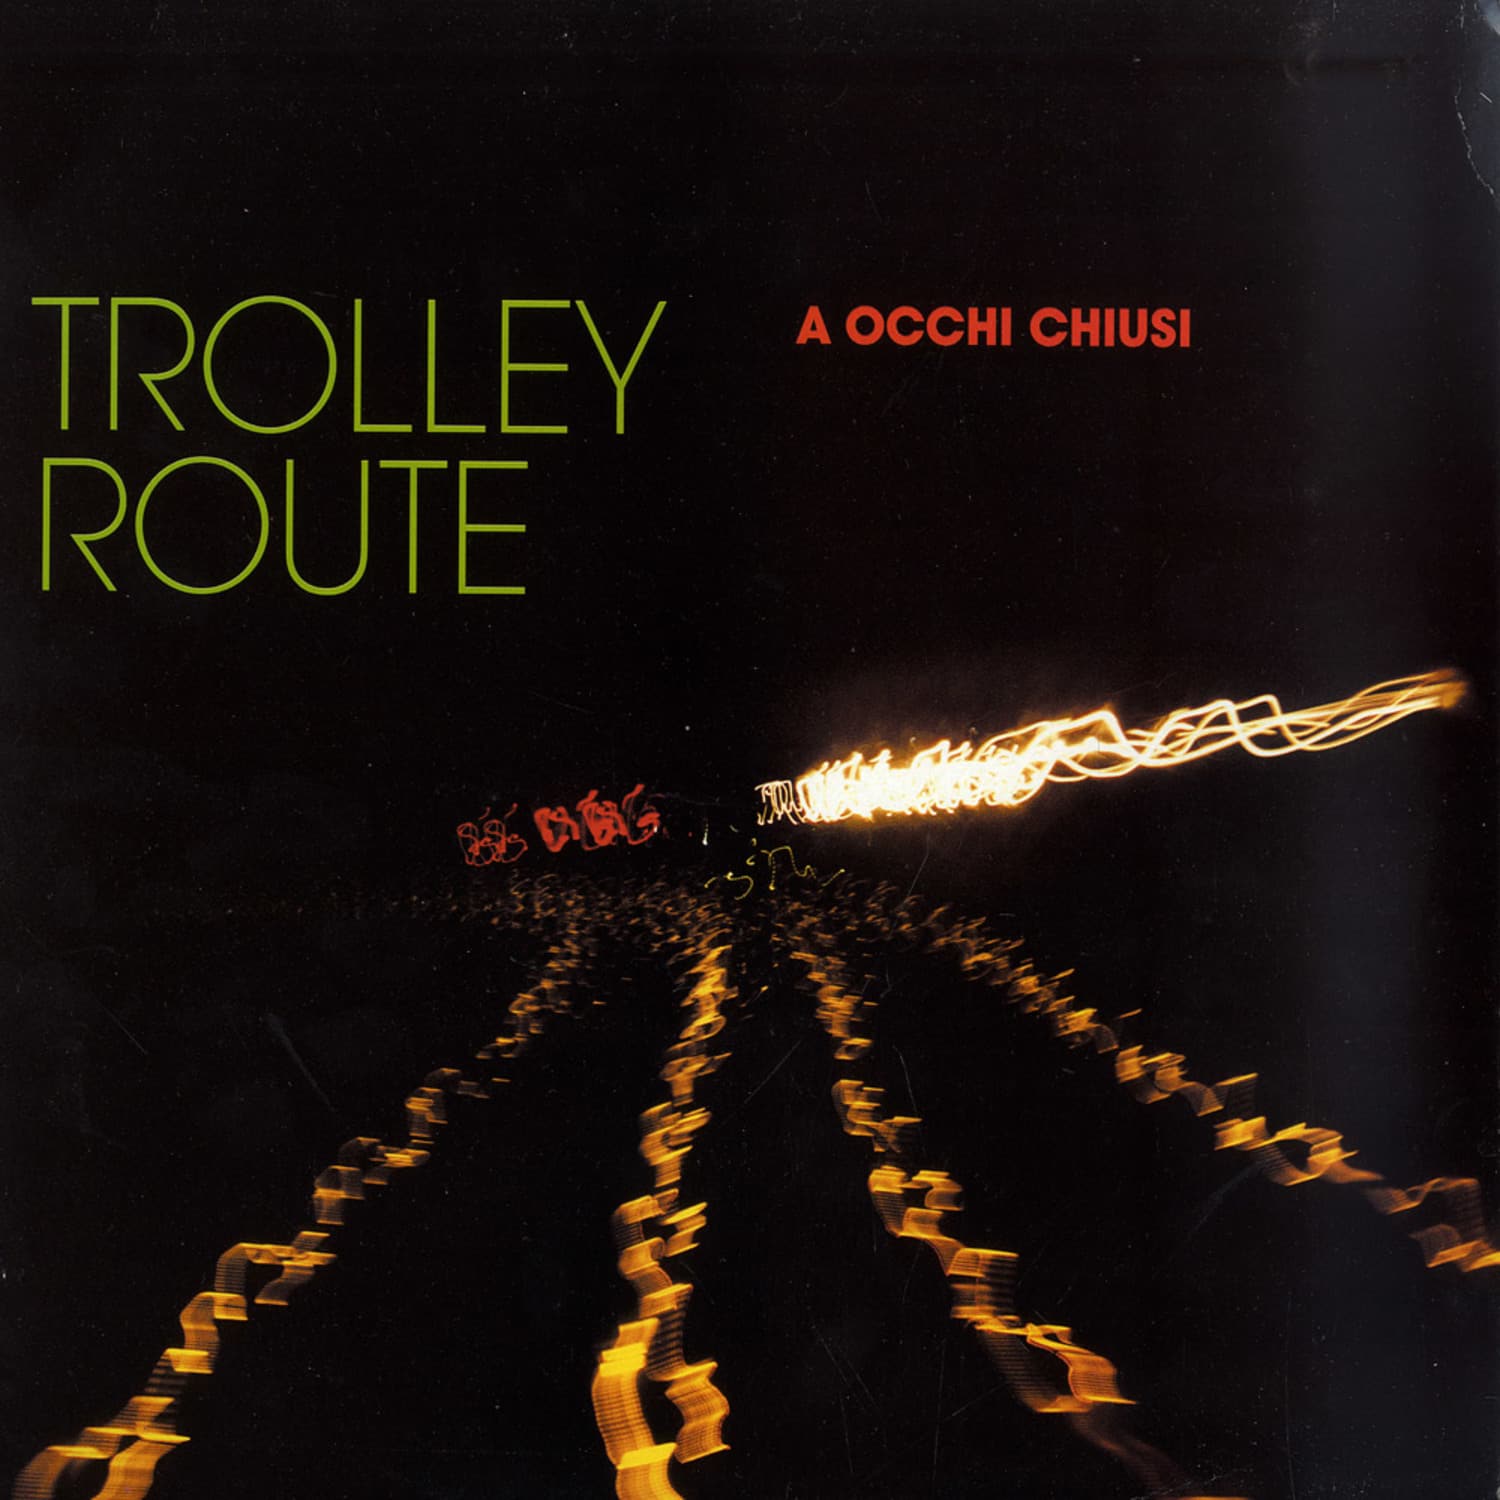 Trolley Route - A OCCHI CHIUSI 